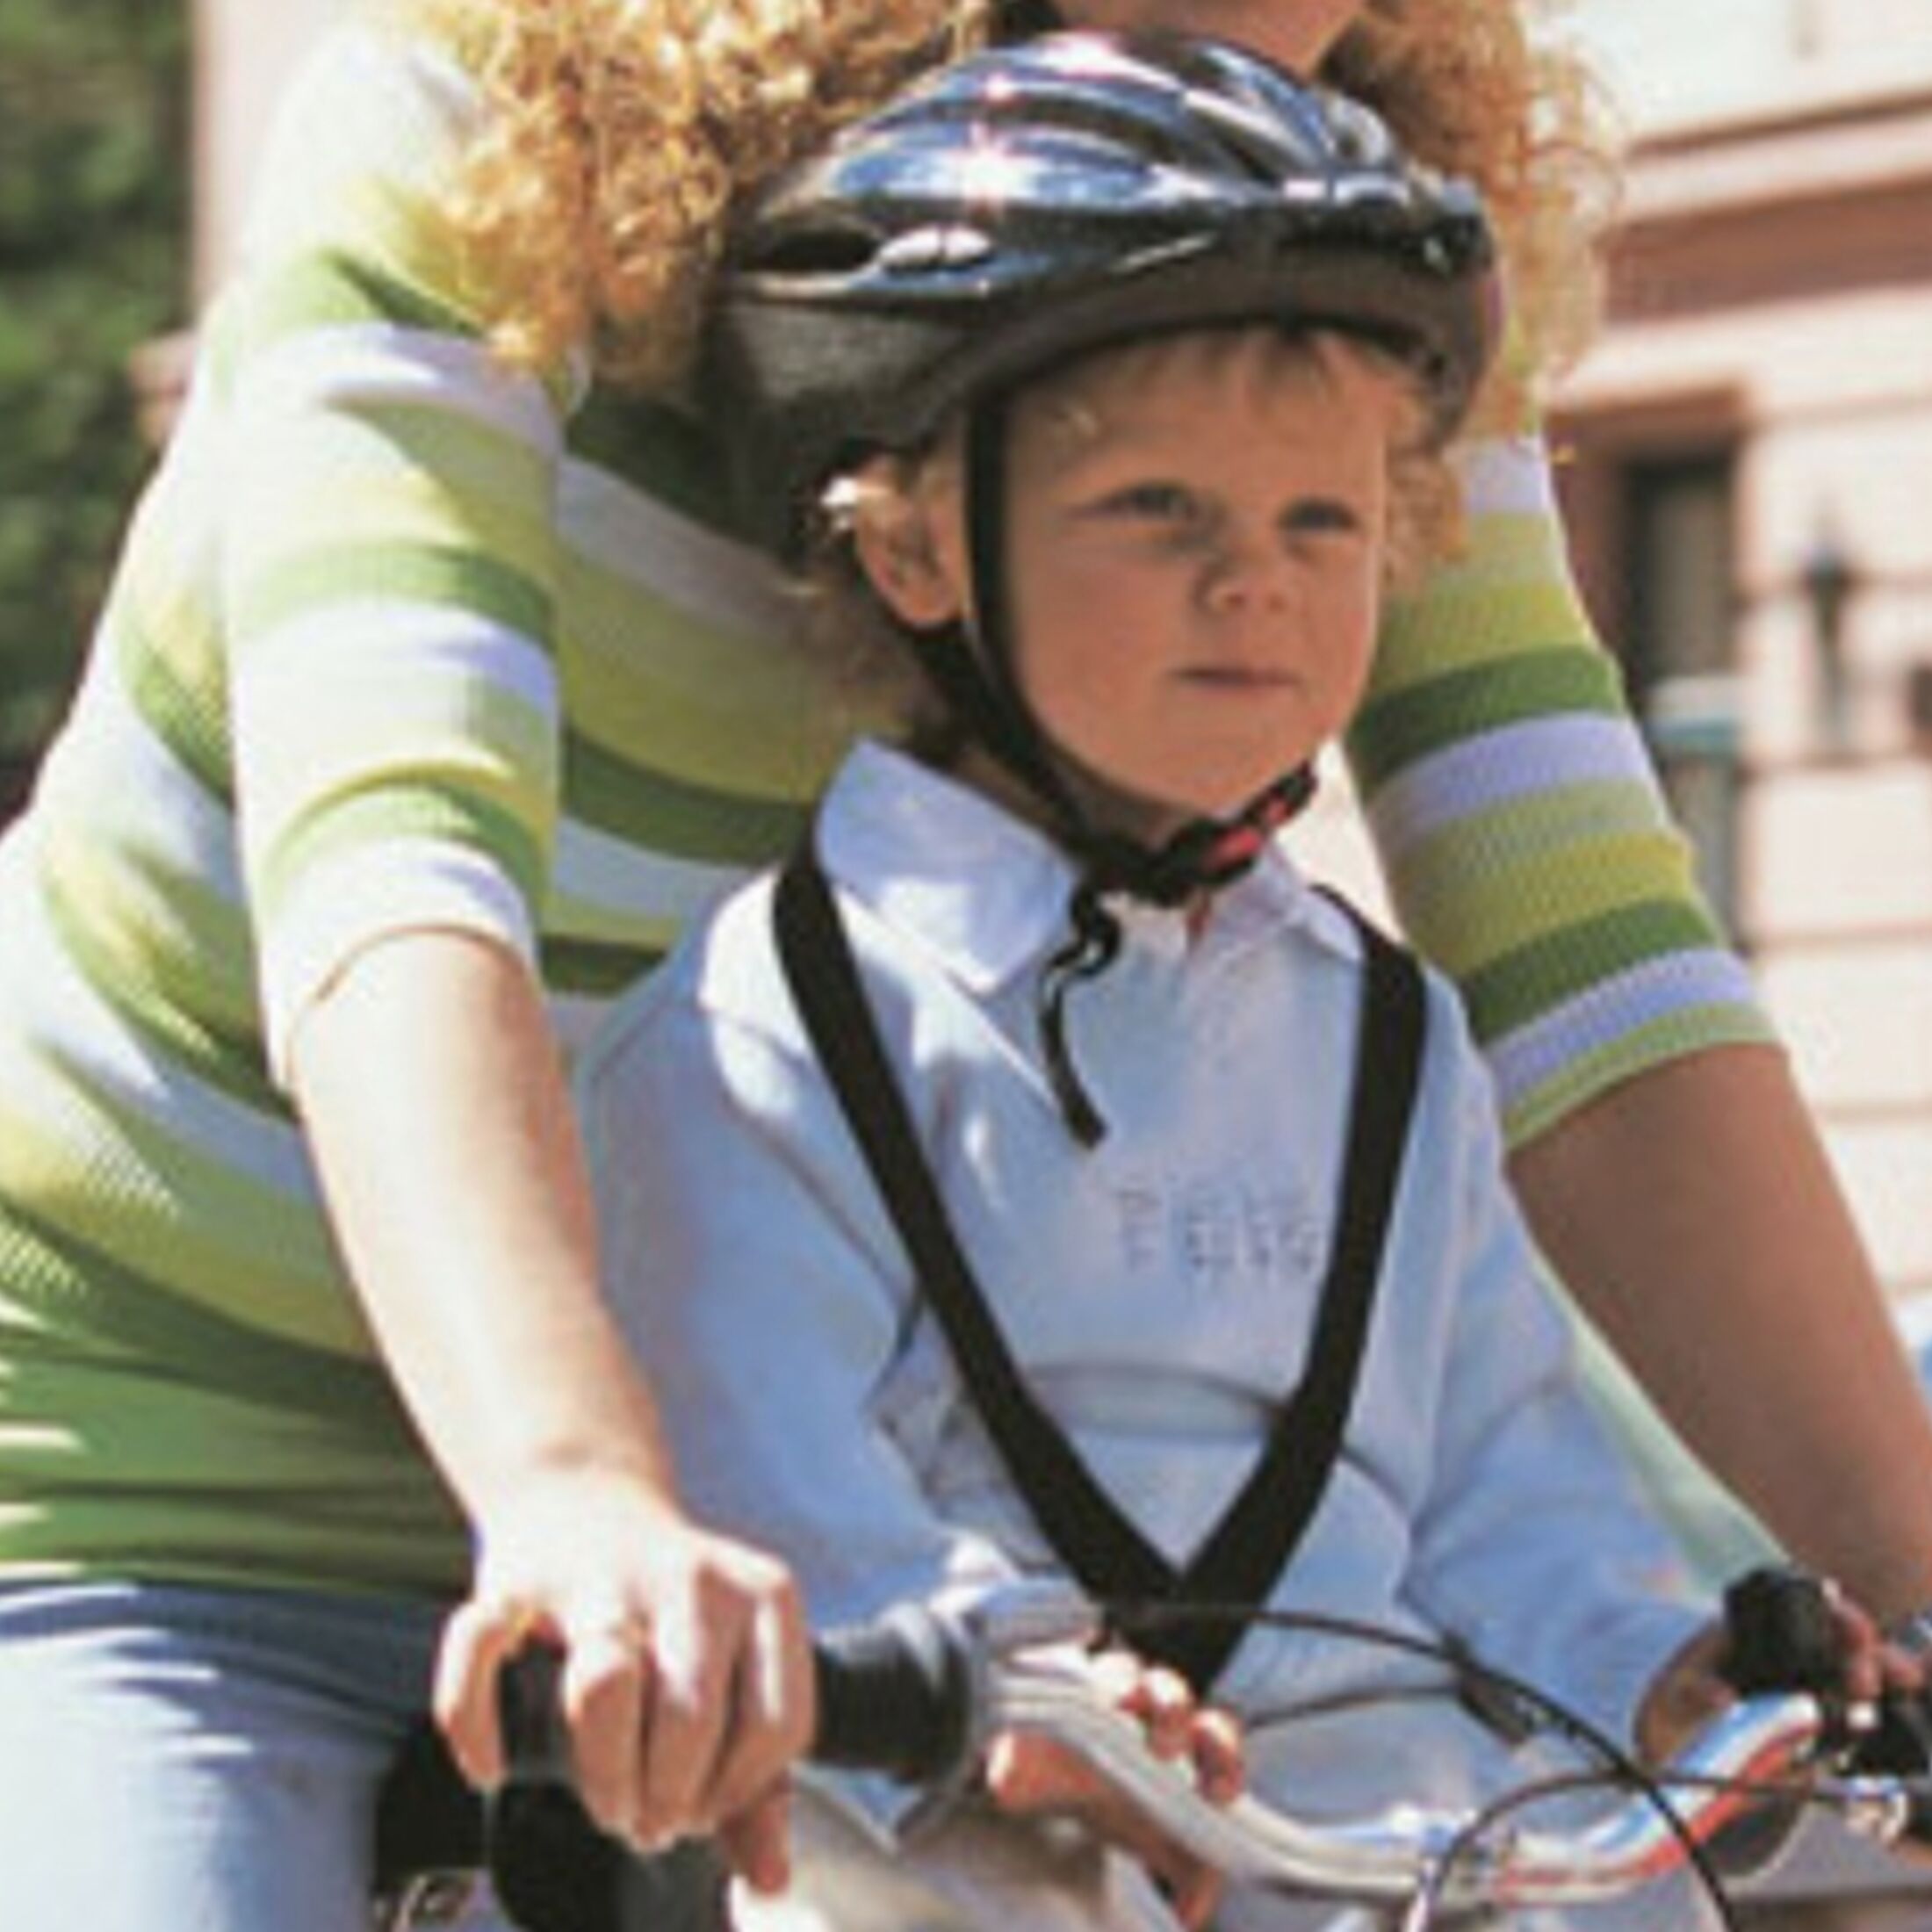 Stiftung Warentest: Nicht jeder Kinder-Fahrradsitz ist sicher